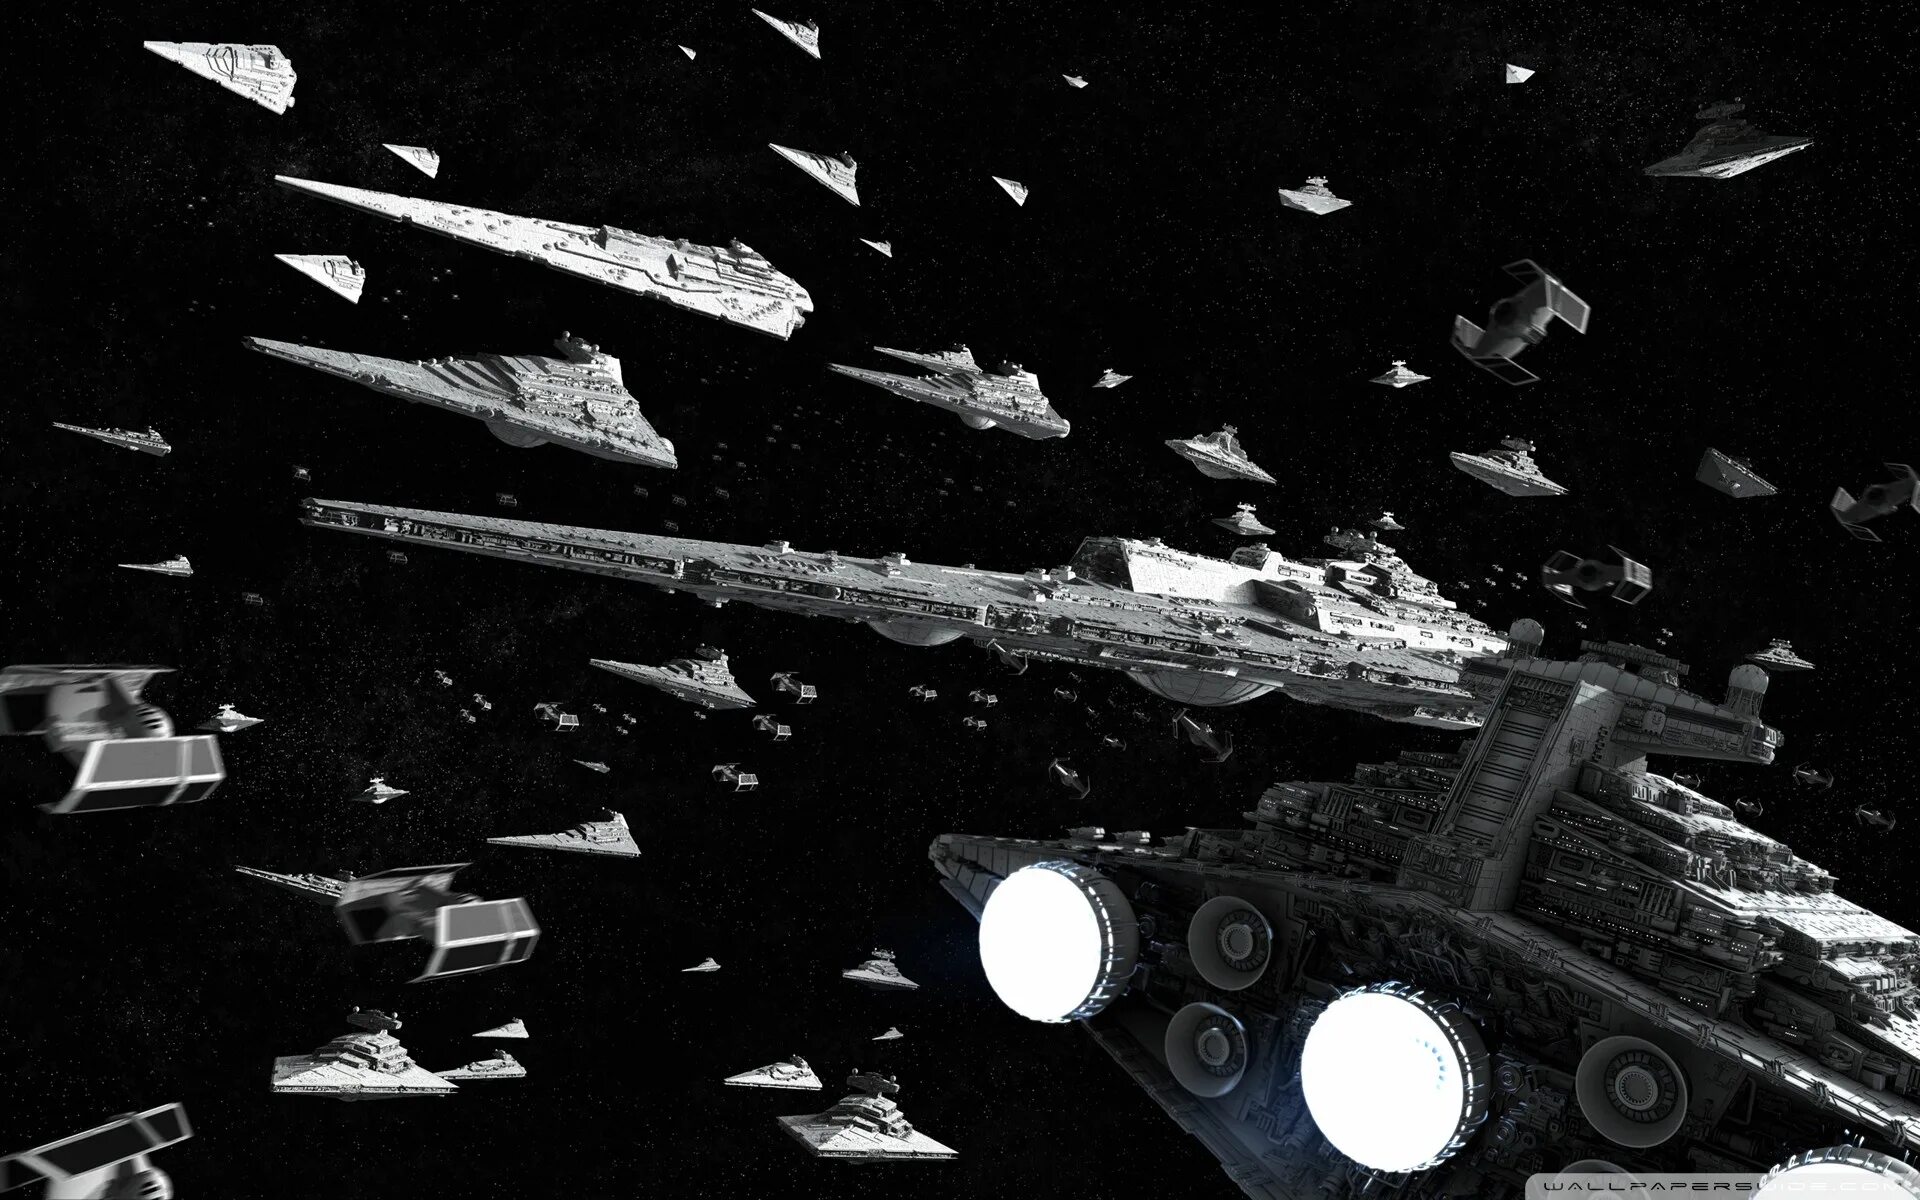 Имперский флот Звездные войны. Star Wars Звездный разрушитель. Star Wars Имперский флот. Звёздные войны космические корабли империи. Звезда флот